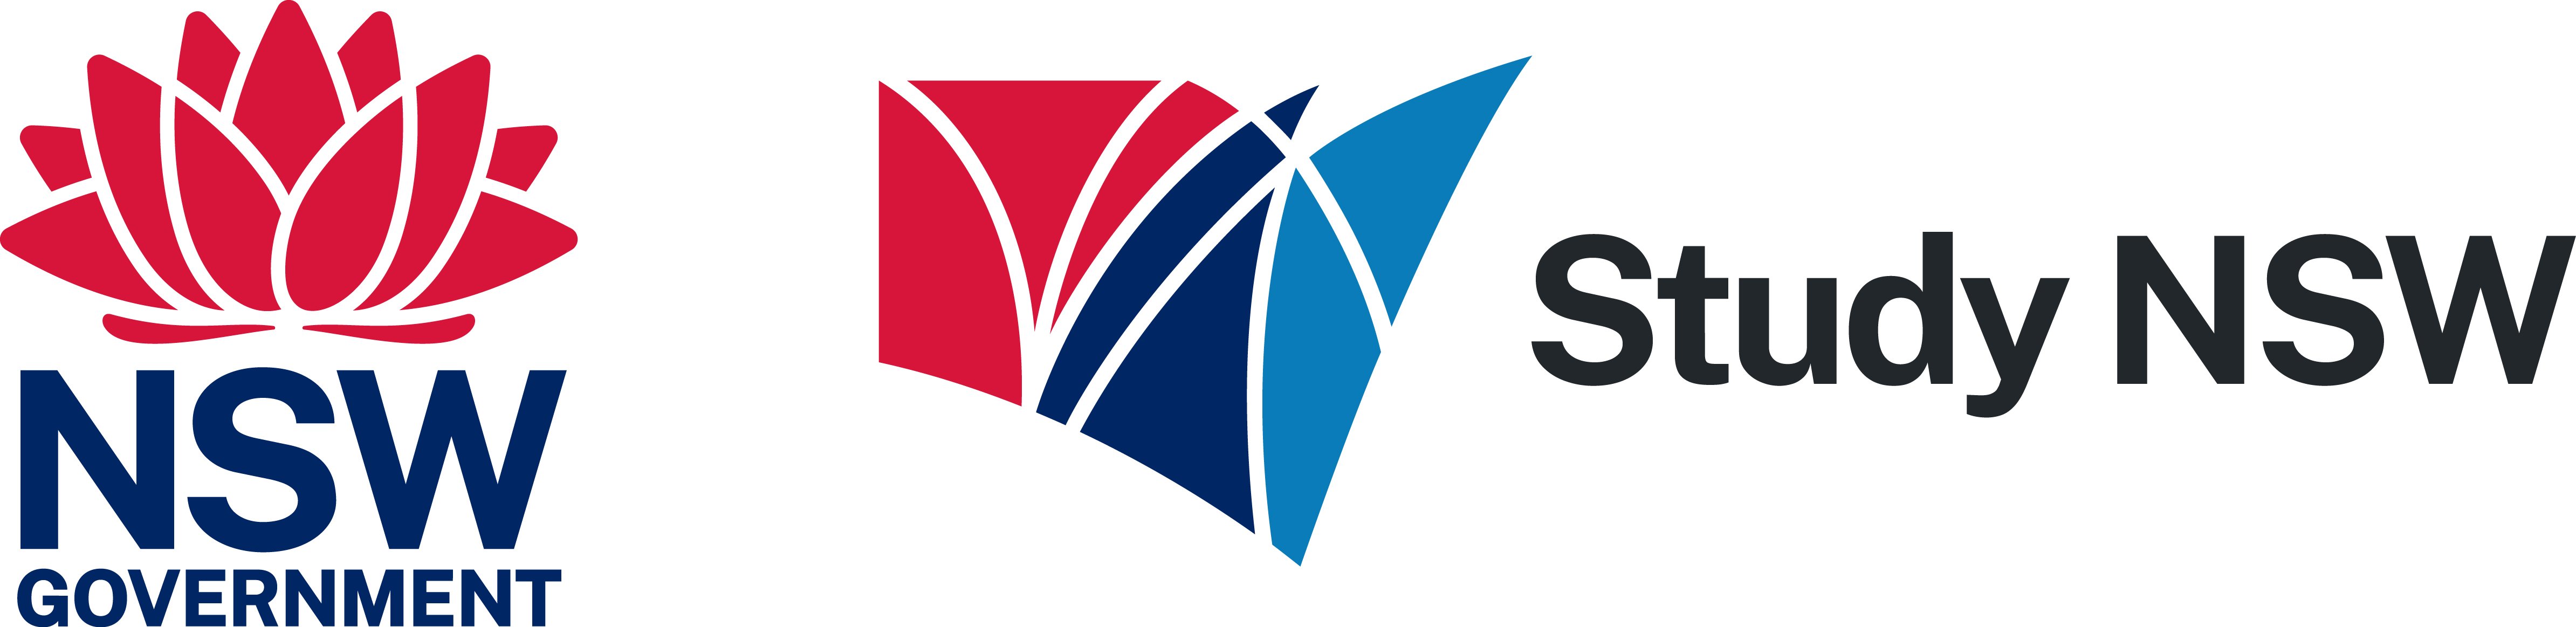 Study NSW logo